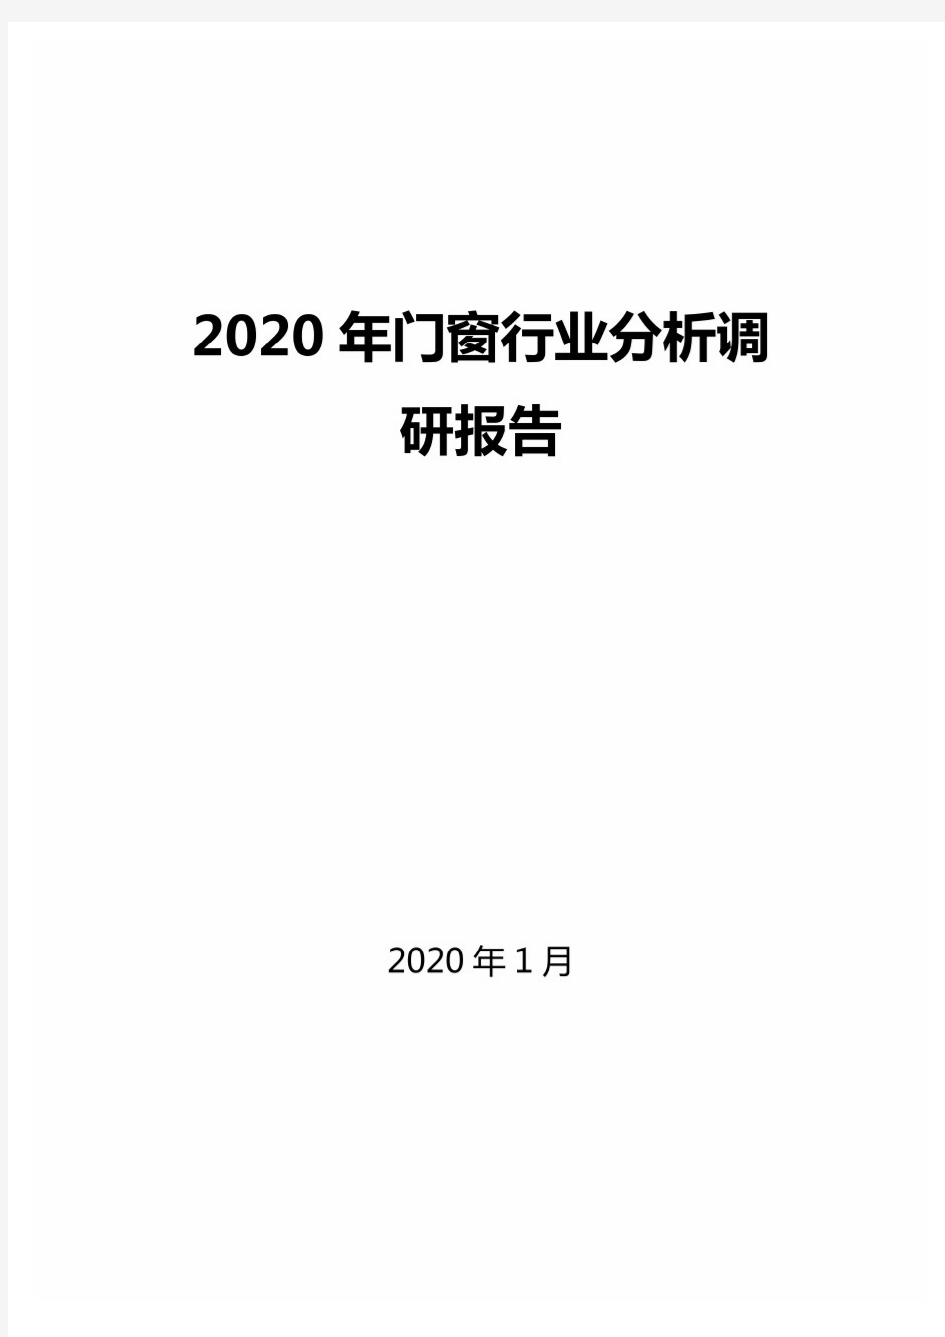 2020年门窗行业分析调研报告